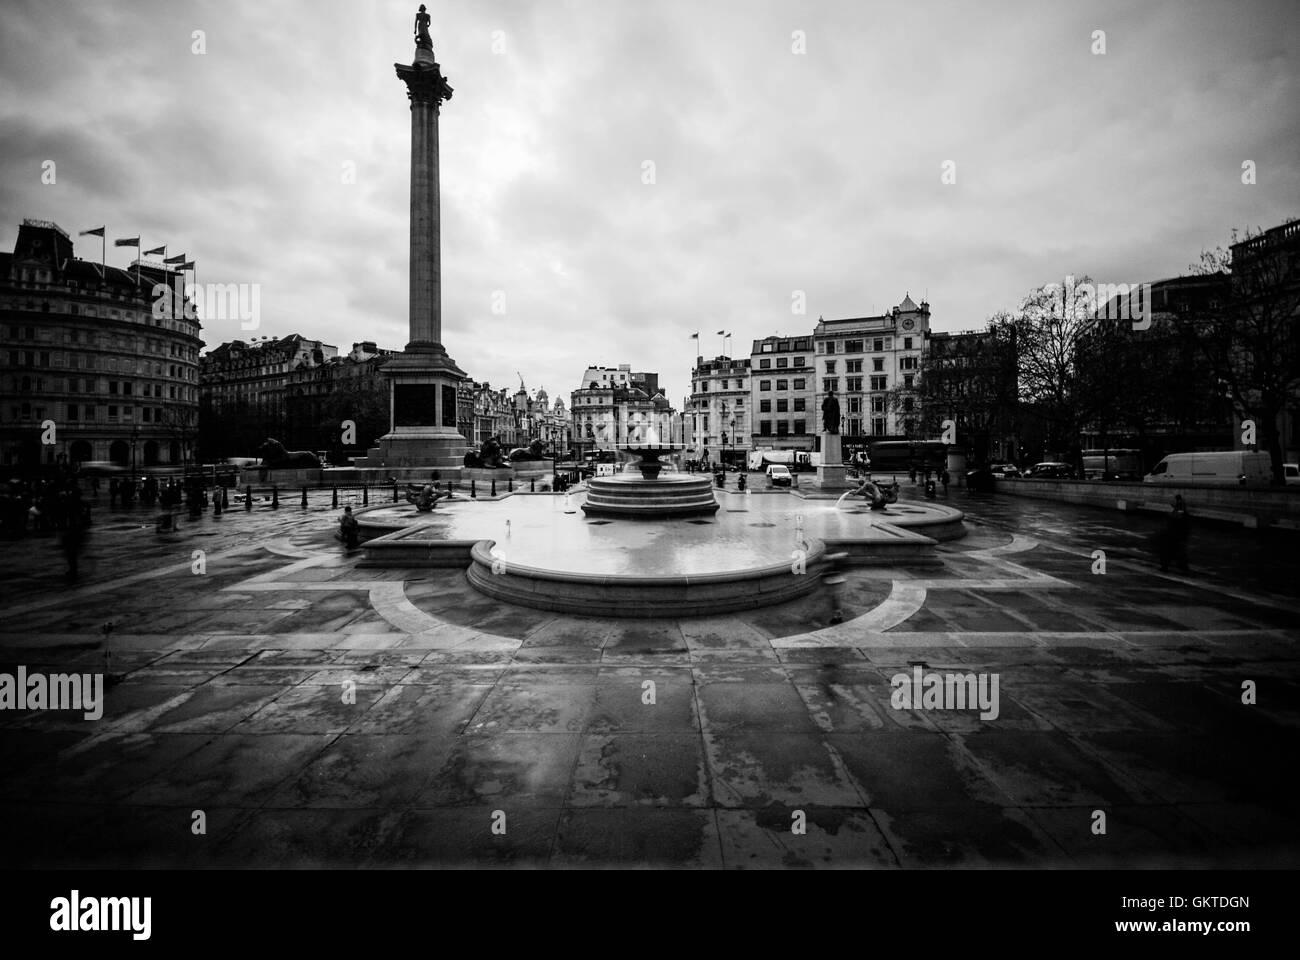 Photo prise à l'avant de la colonne Nelson, à Trafalgar square, dans un jour nuageux. Banque D'Images